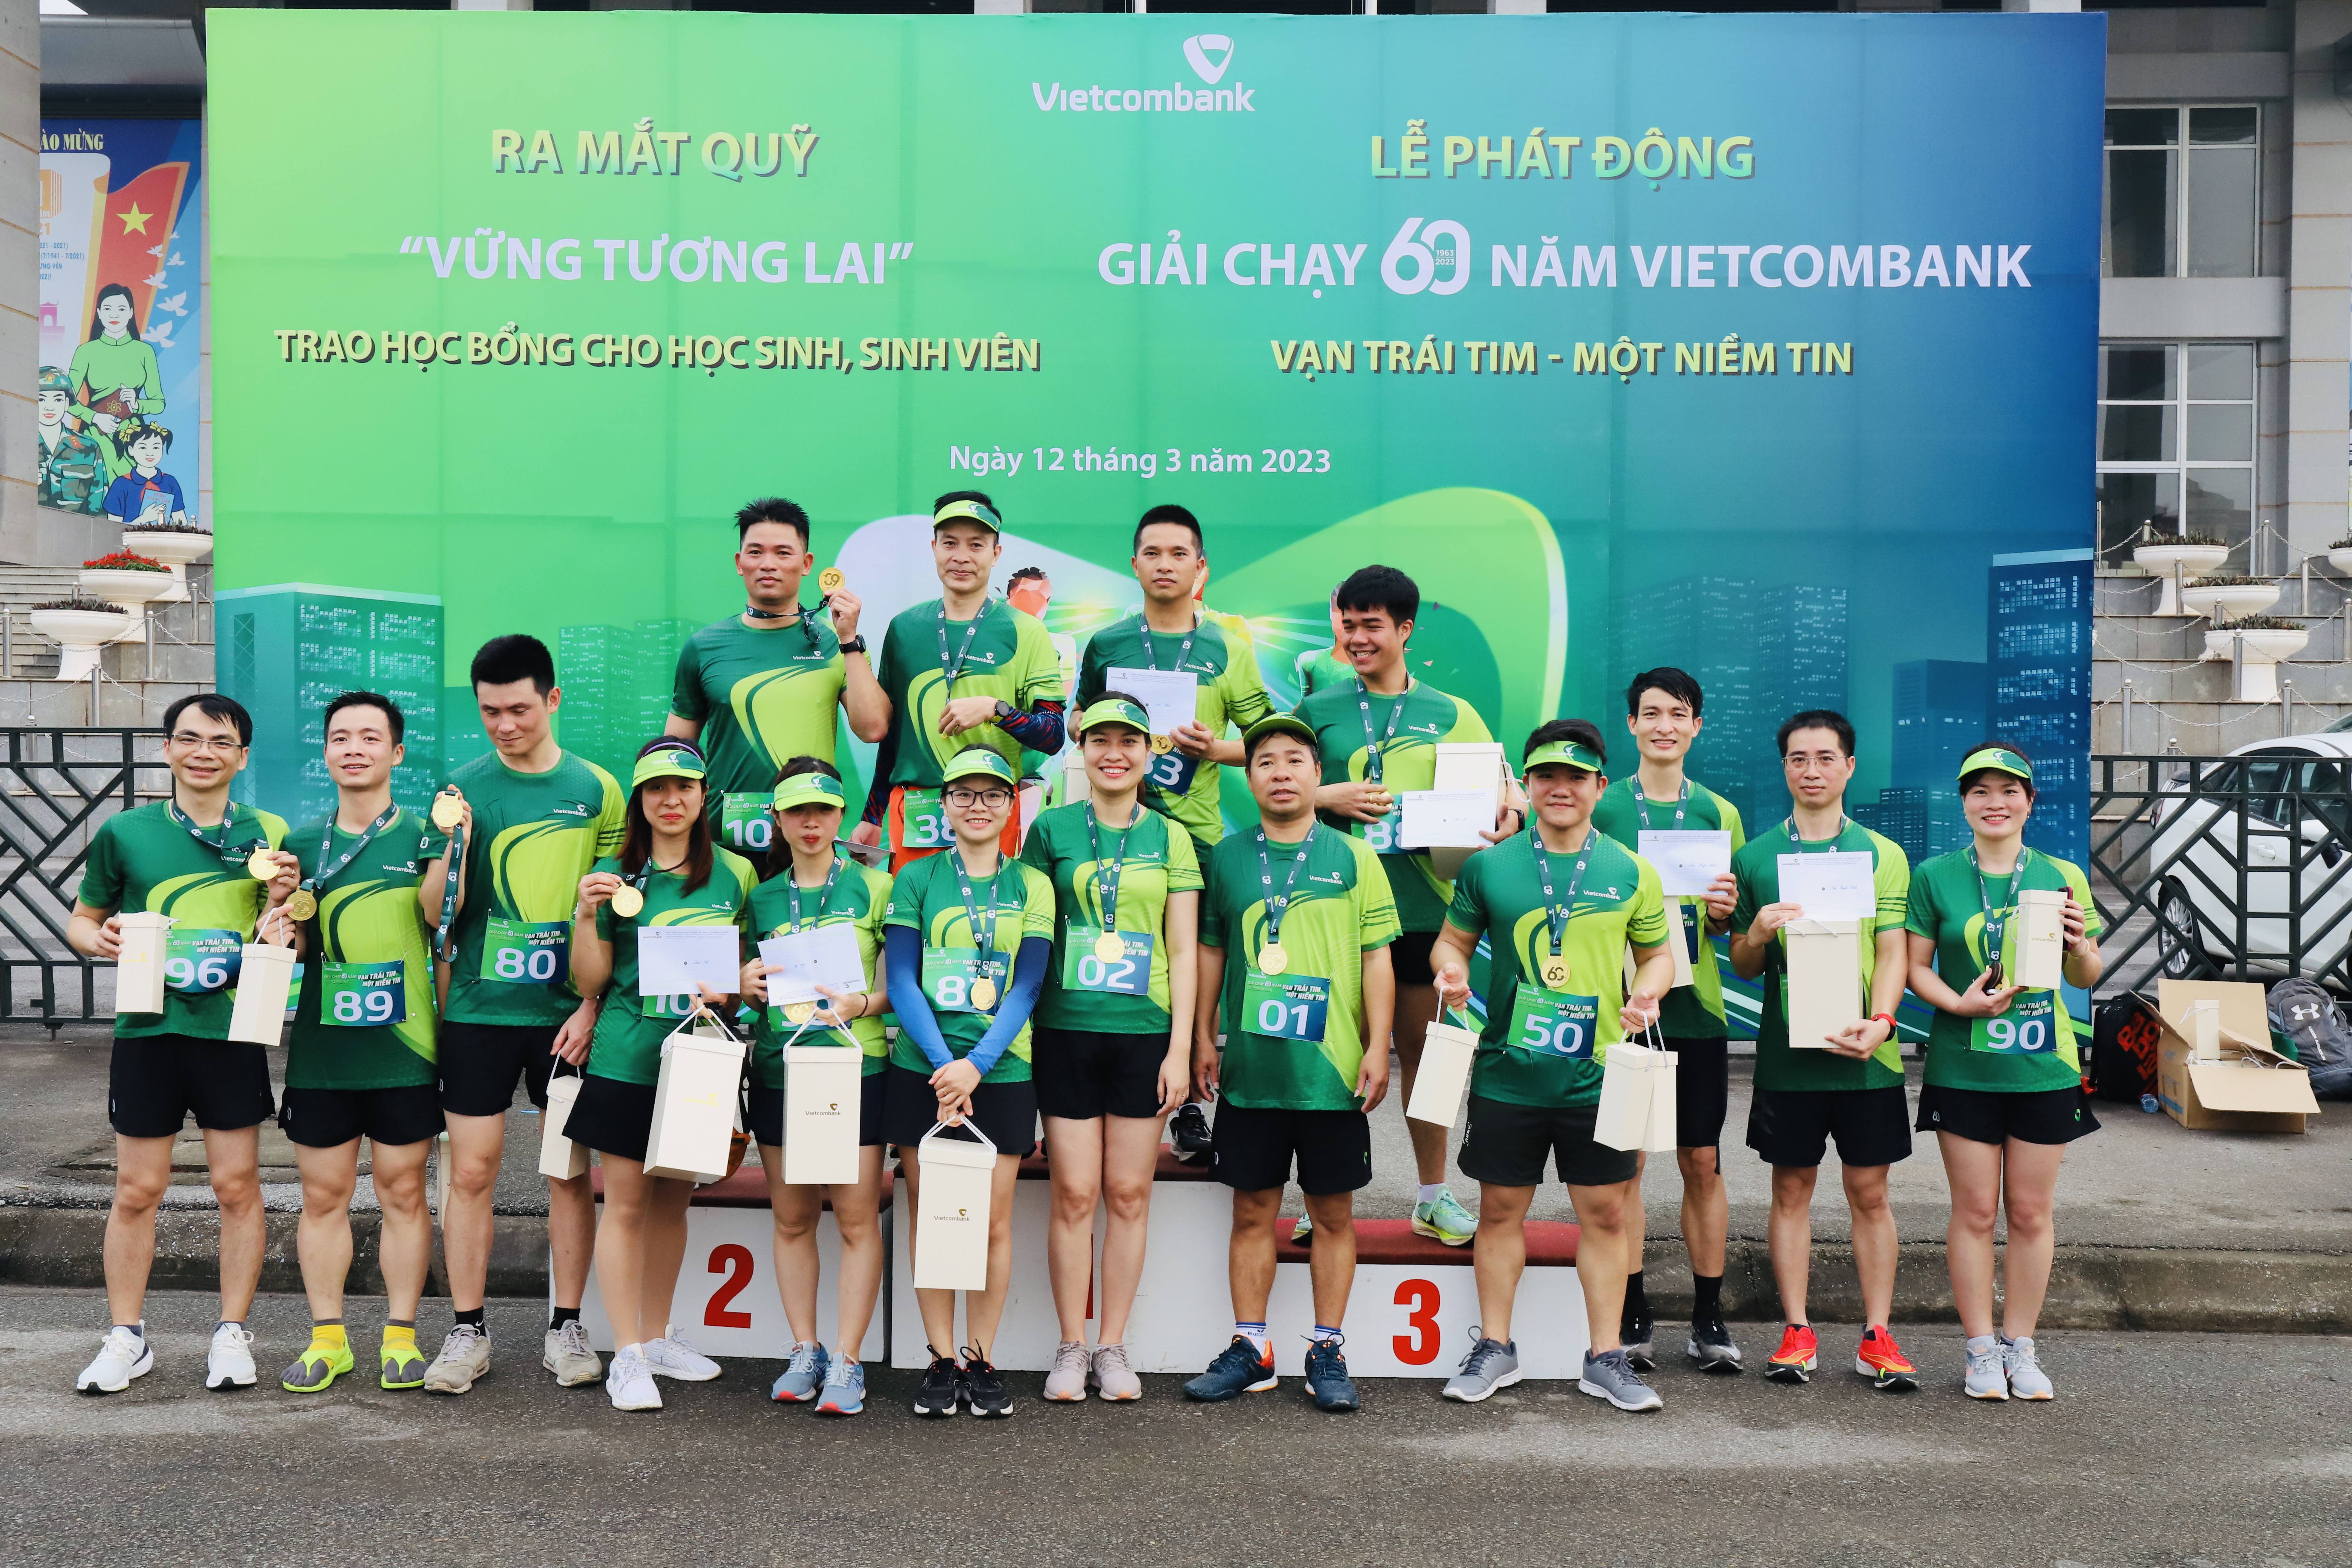 Vietcombank Phố Hiến tổ chức giải chạy Vietcombank 60 năm “Vạn trái tim - Một niềm tin” 